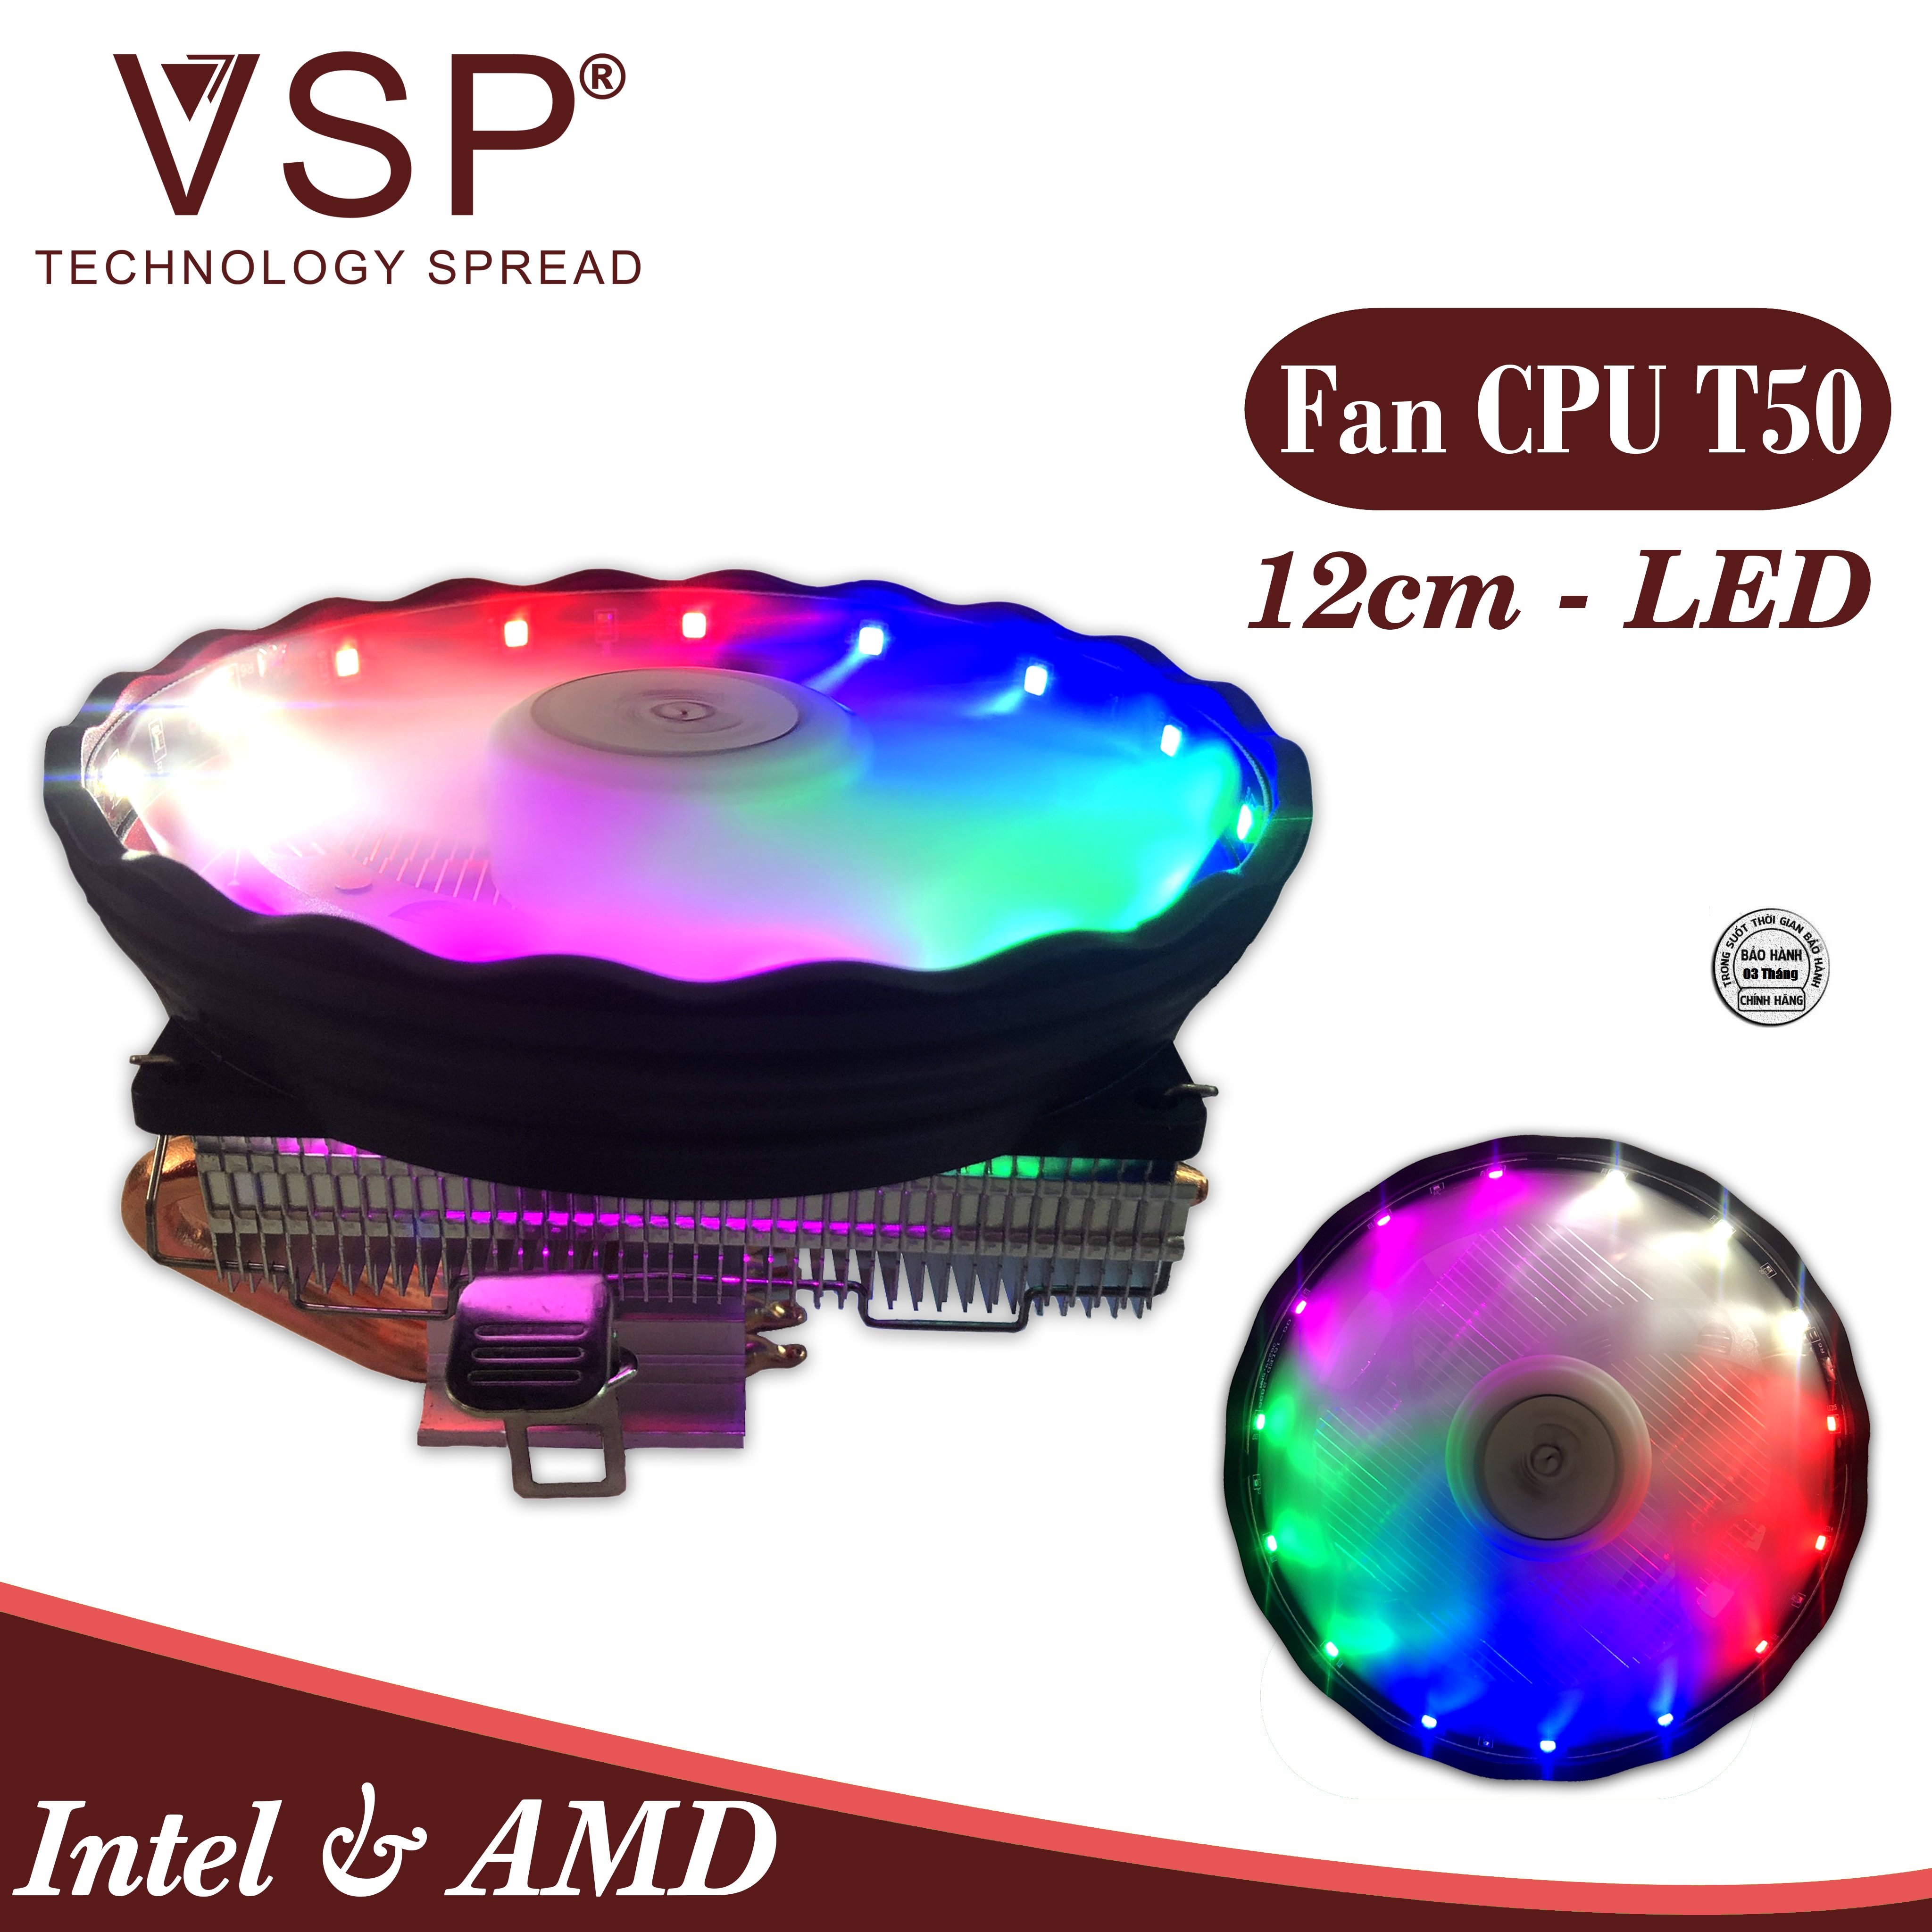 Quạt tản nhiệt VSP Fan Top-Down LED T50 (Tản 4U, kích thước 12cm) - Hàng chính hãng